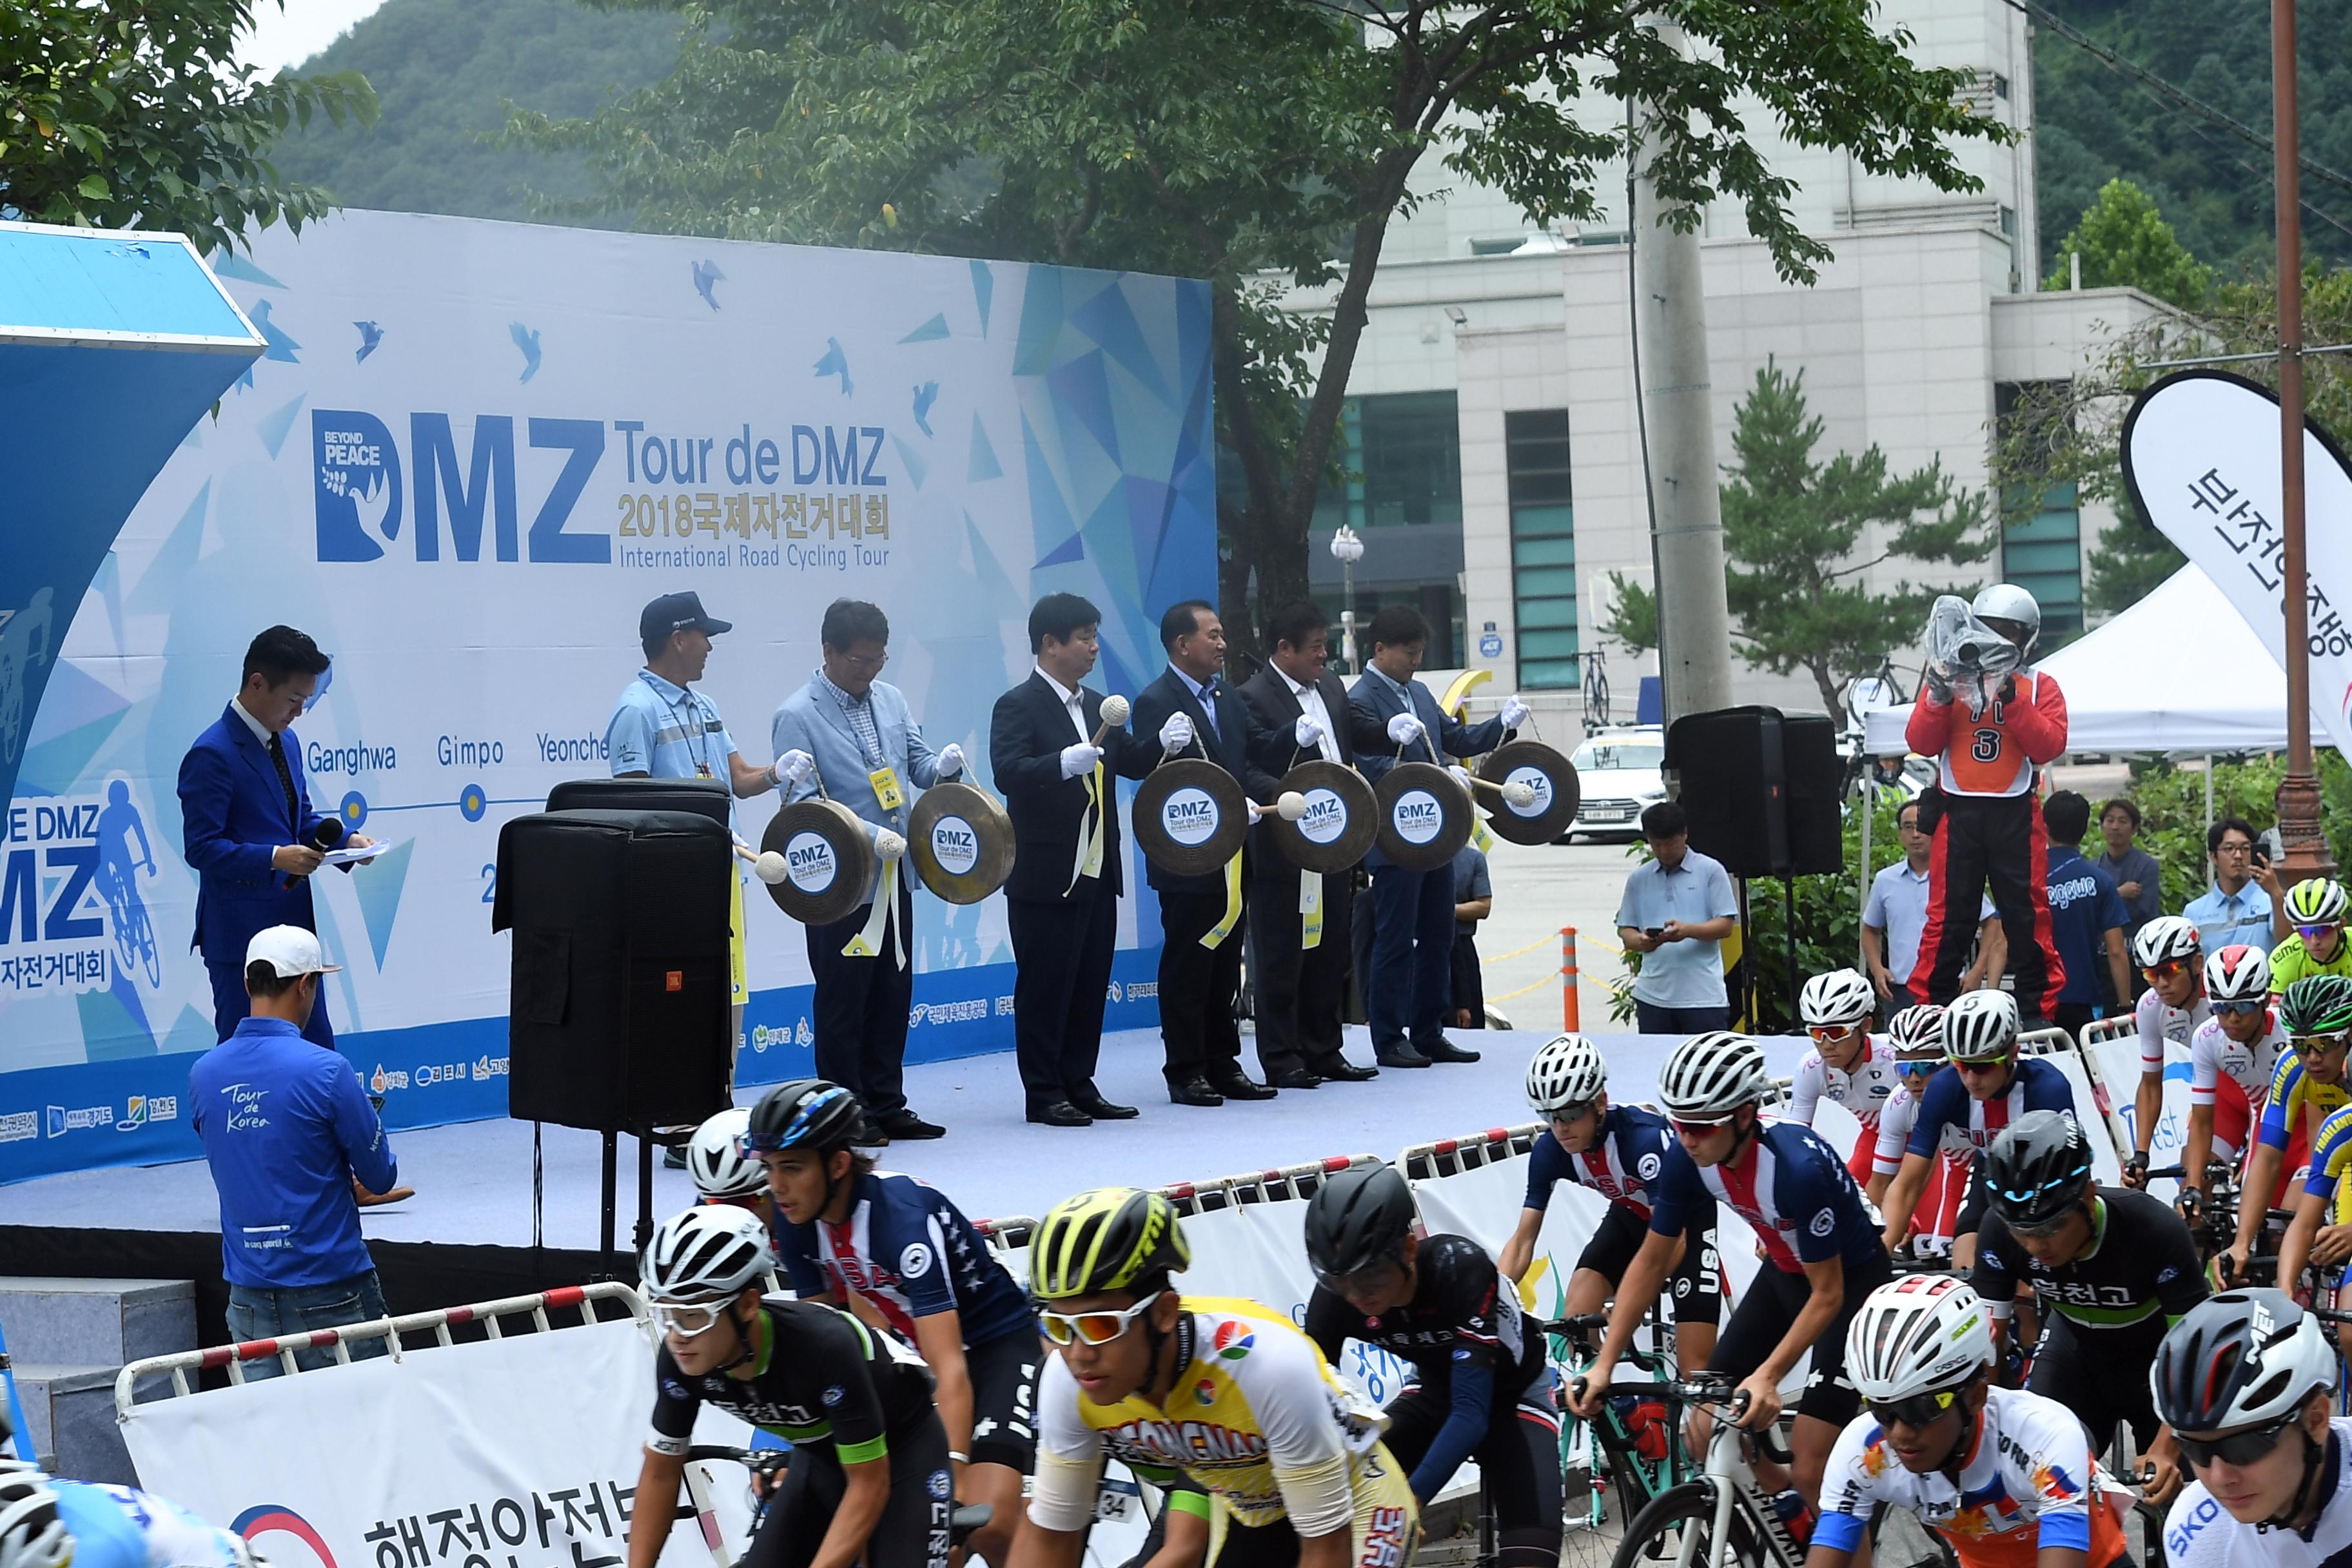 2018 Tour de DMZ 국제자전거대회 출발식 의 사진